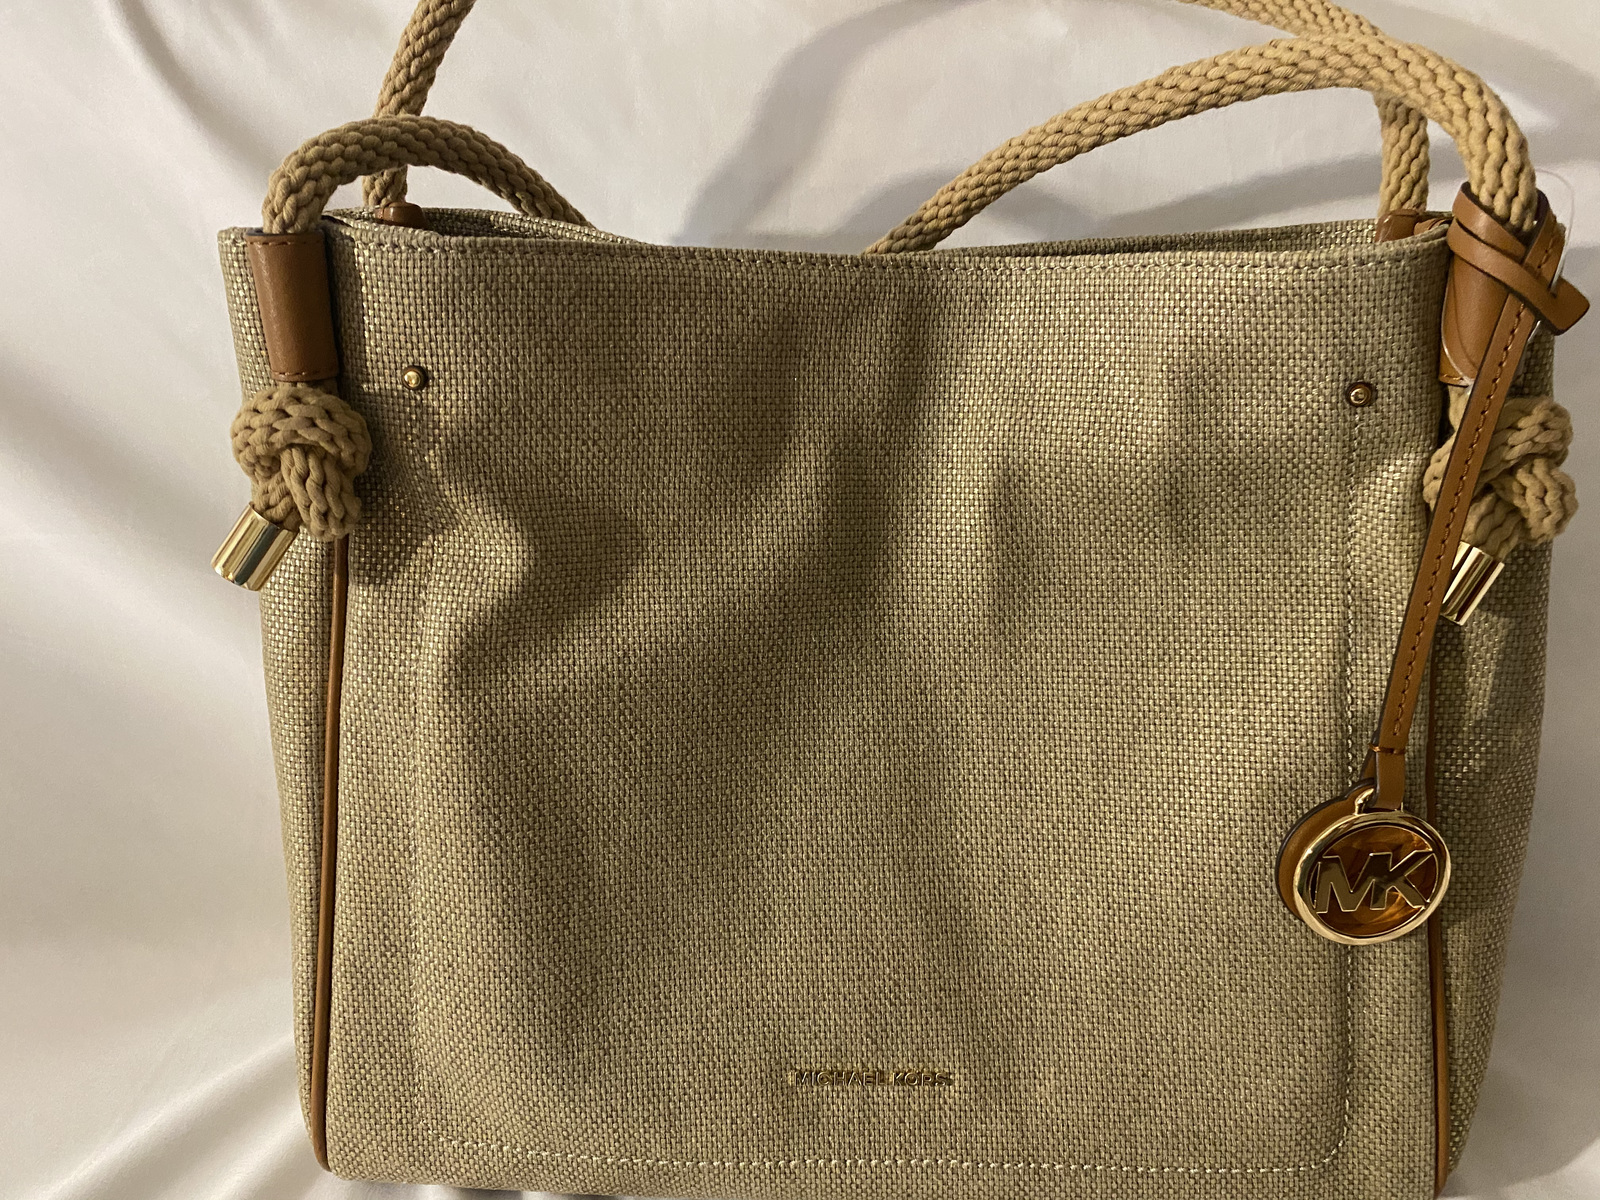 MICHAEL KORS: handbag for woman - Dove Grey